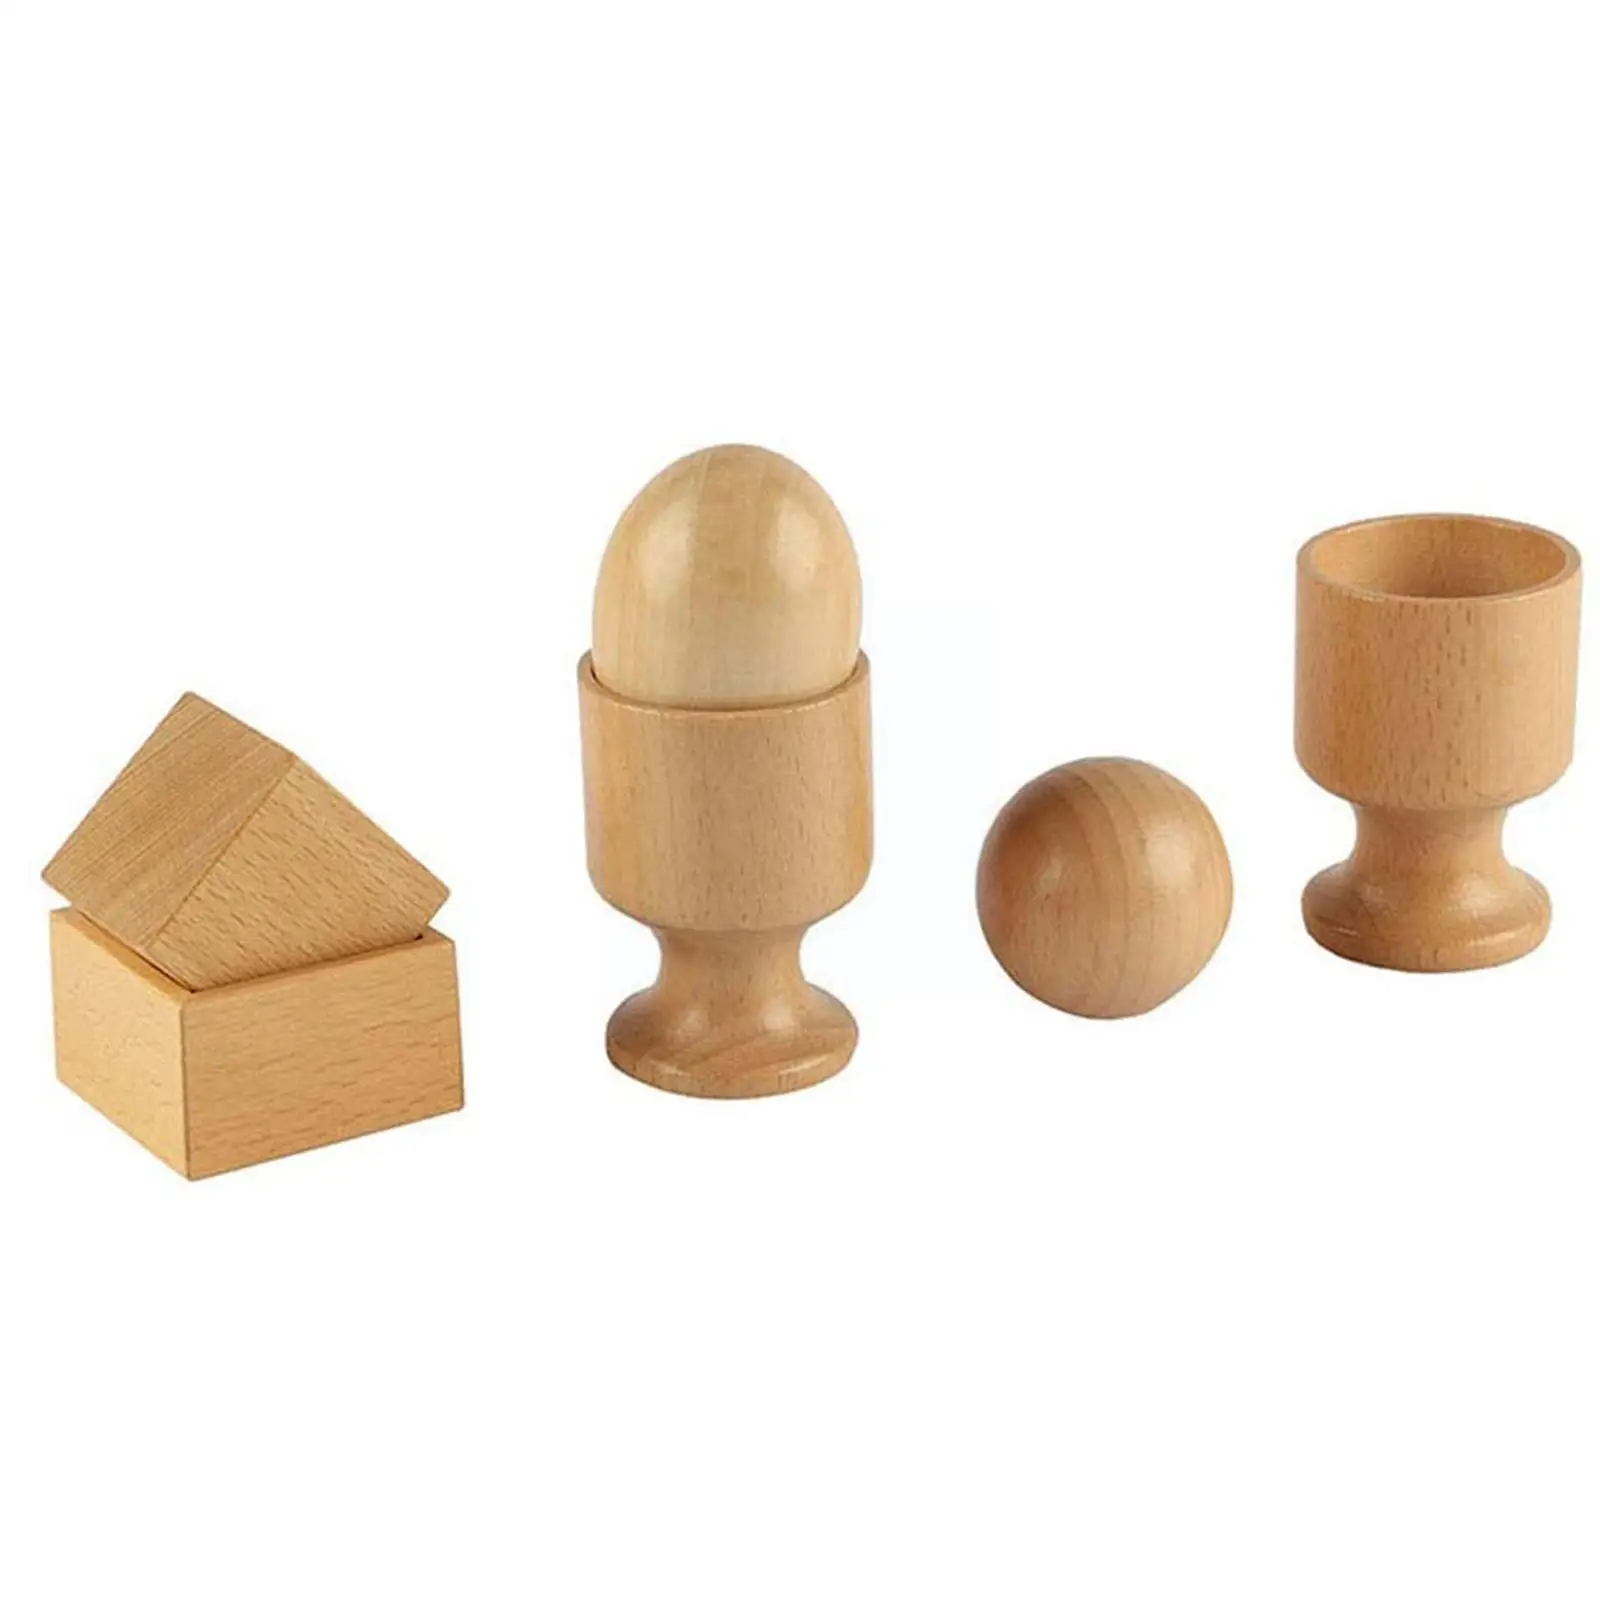 

Детские игрушки 3D деревянные предметы для упражнений ручная коробка для обучения захватывающая чашка Ранние игрушки куб Дошкольная яйцо игрушка малыш R7H7